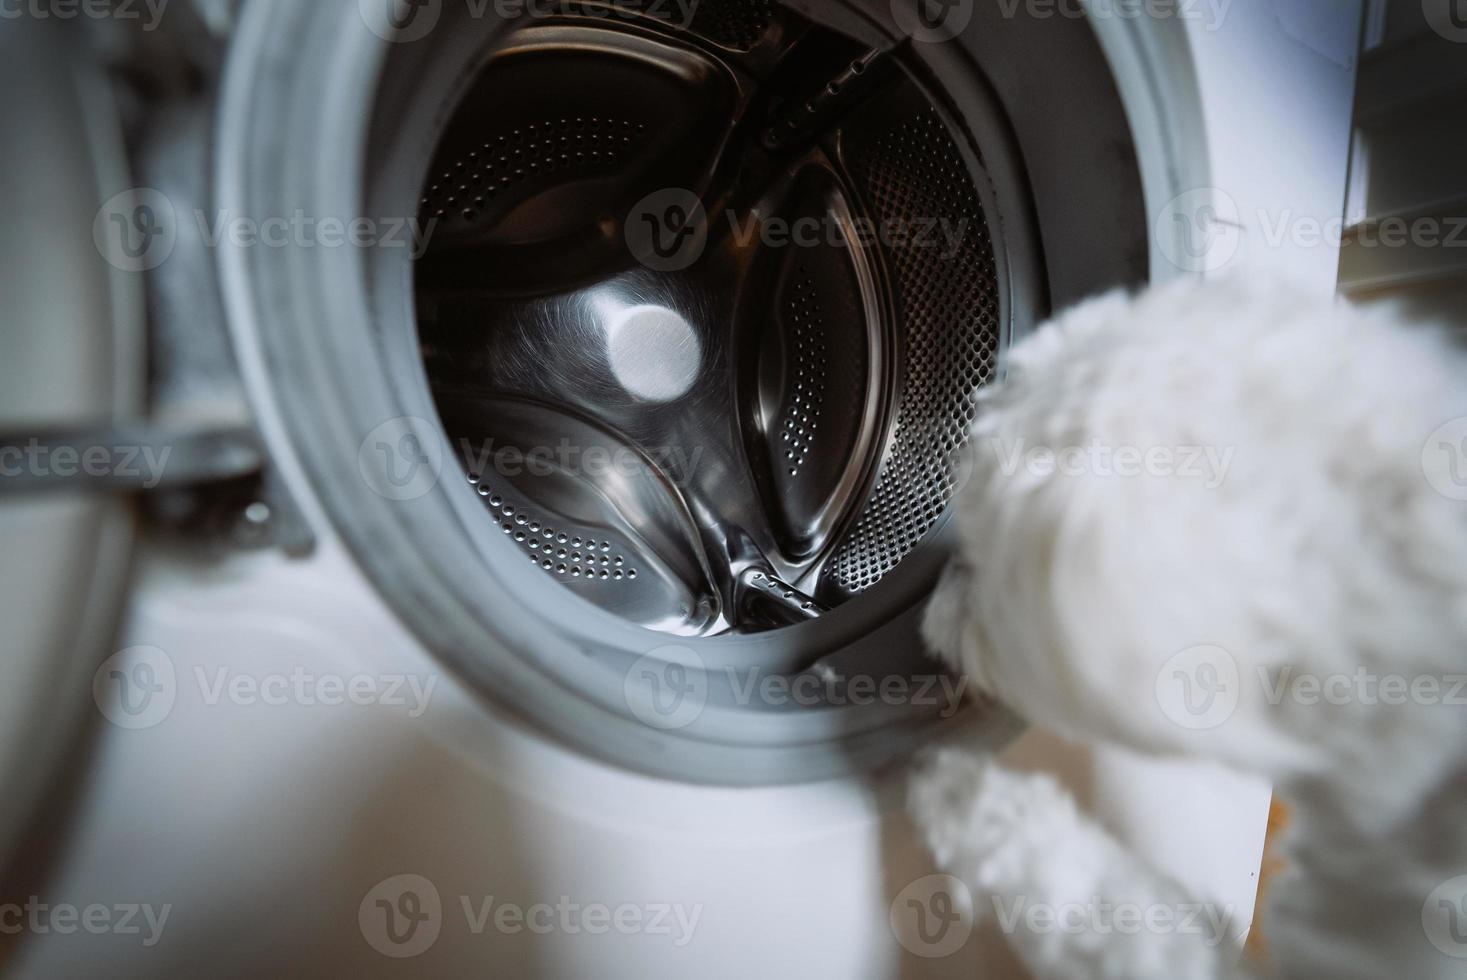 lindo perrito blanco mirando a la lavadora. foto